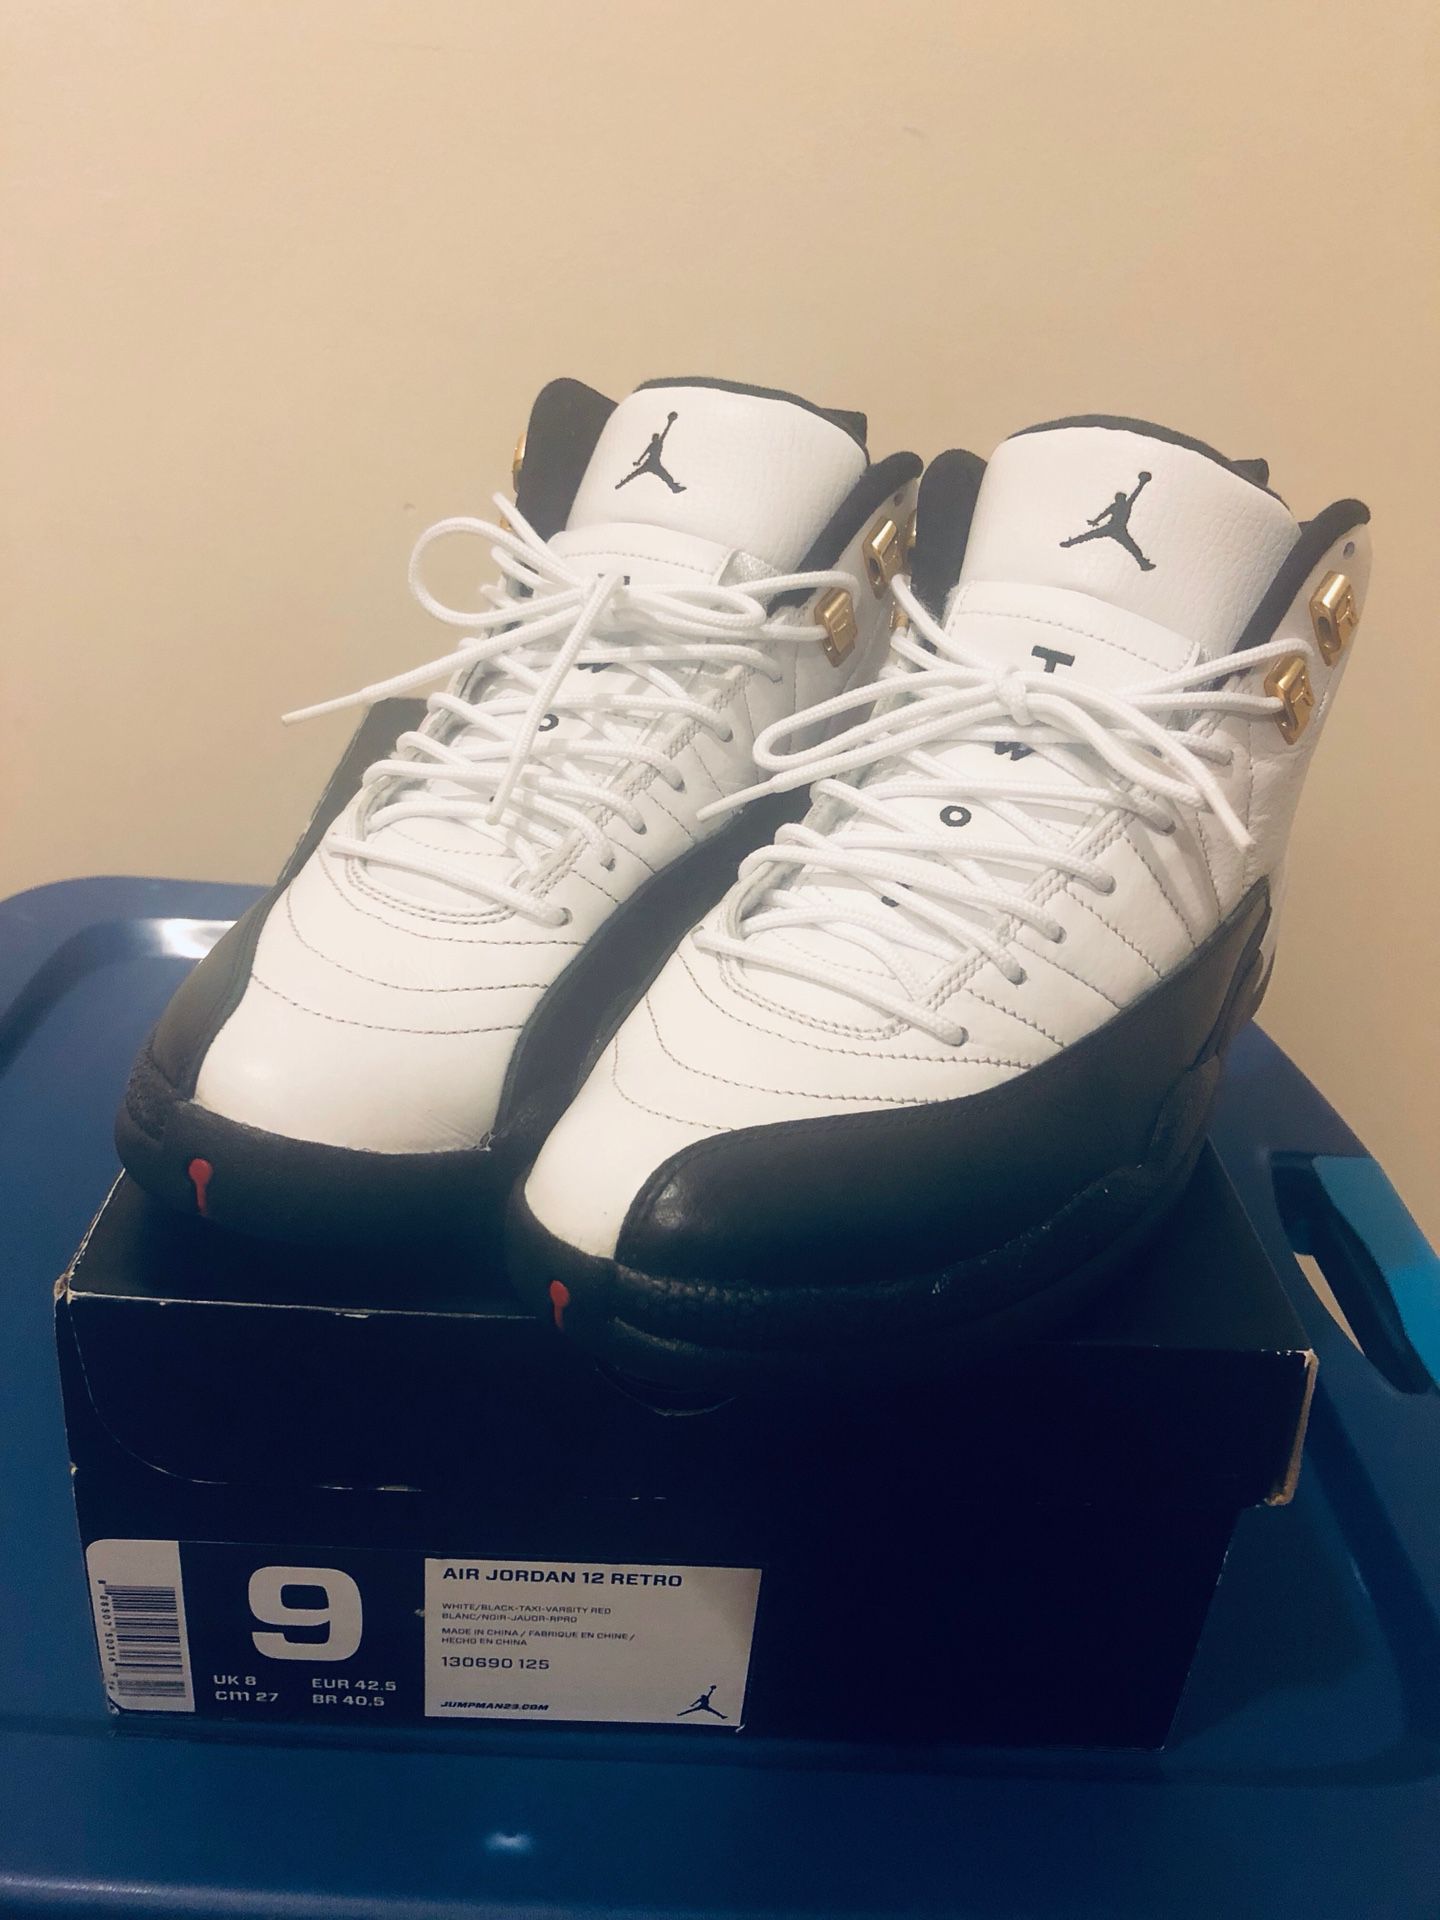 Jordan size 9